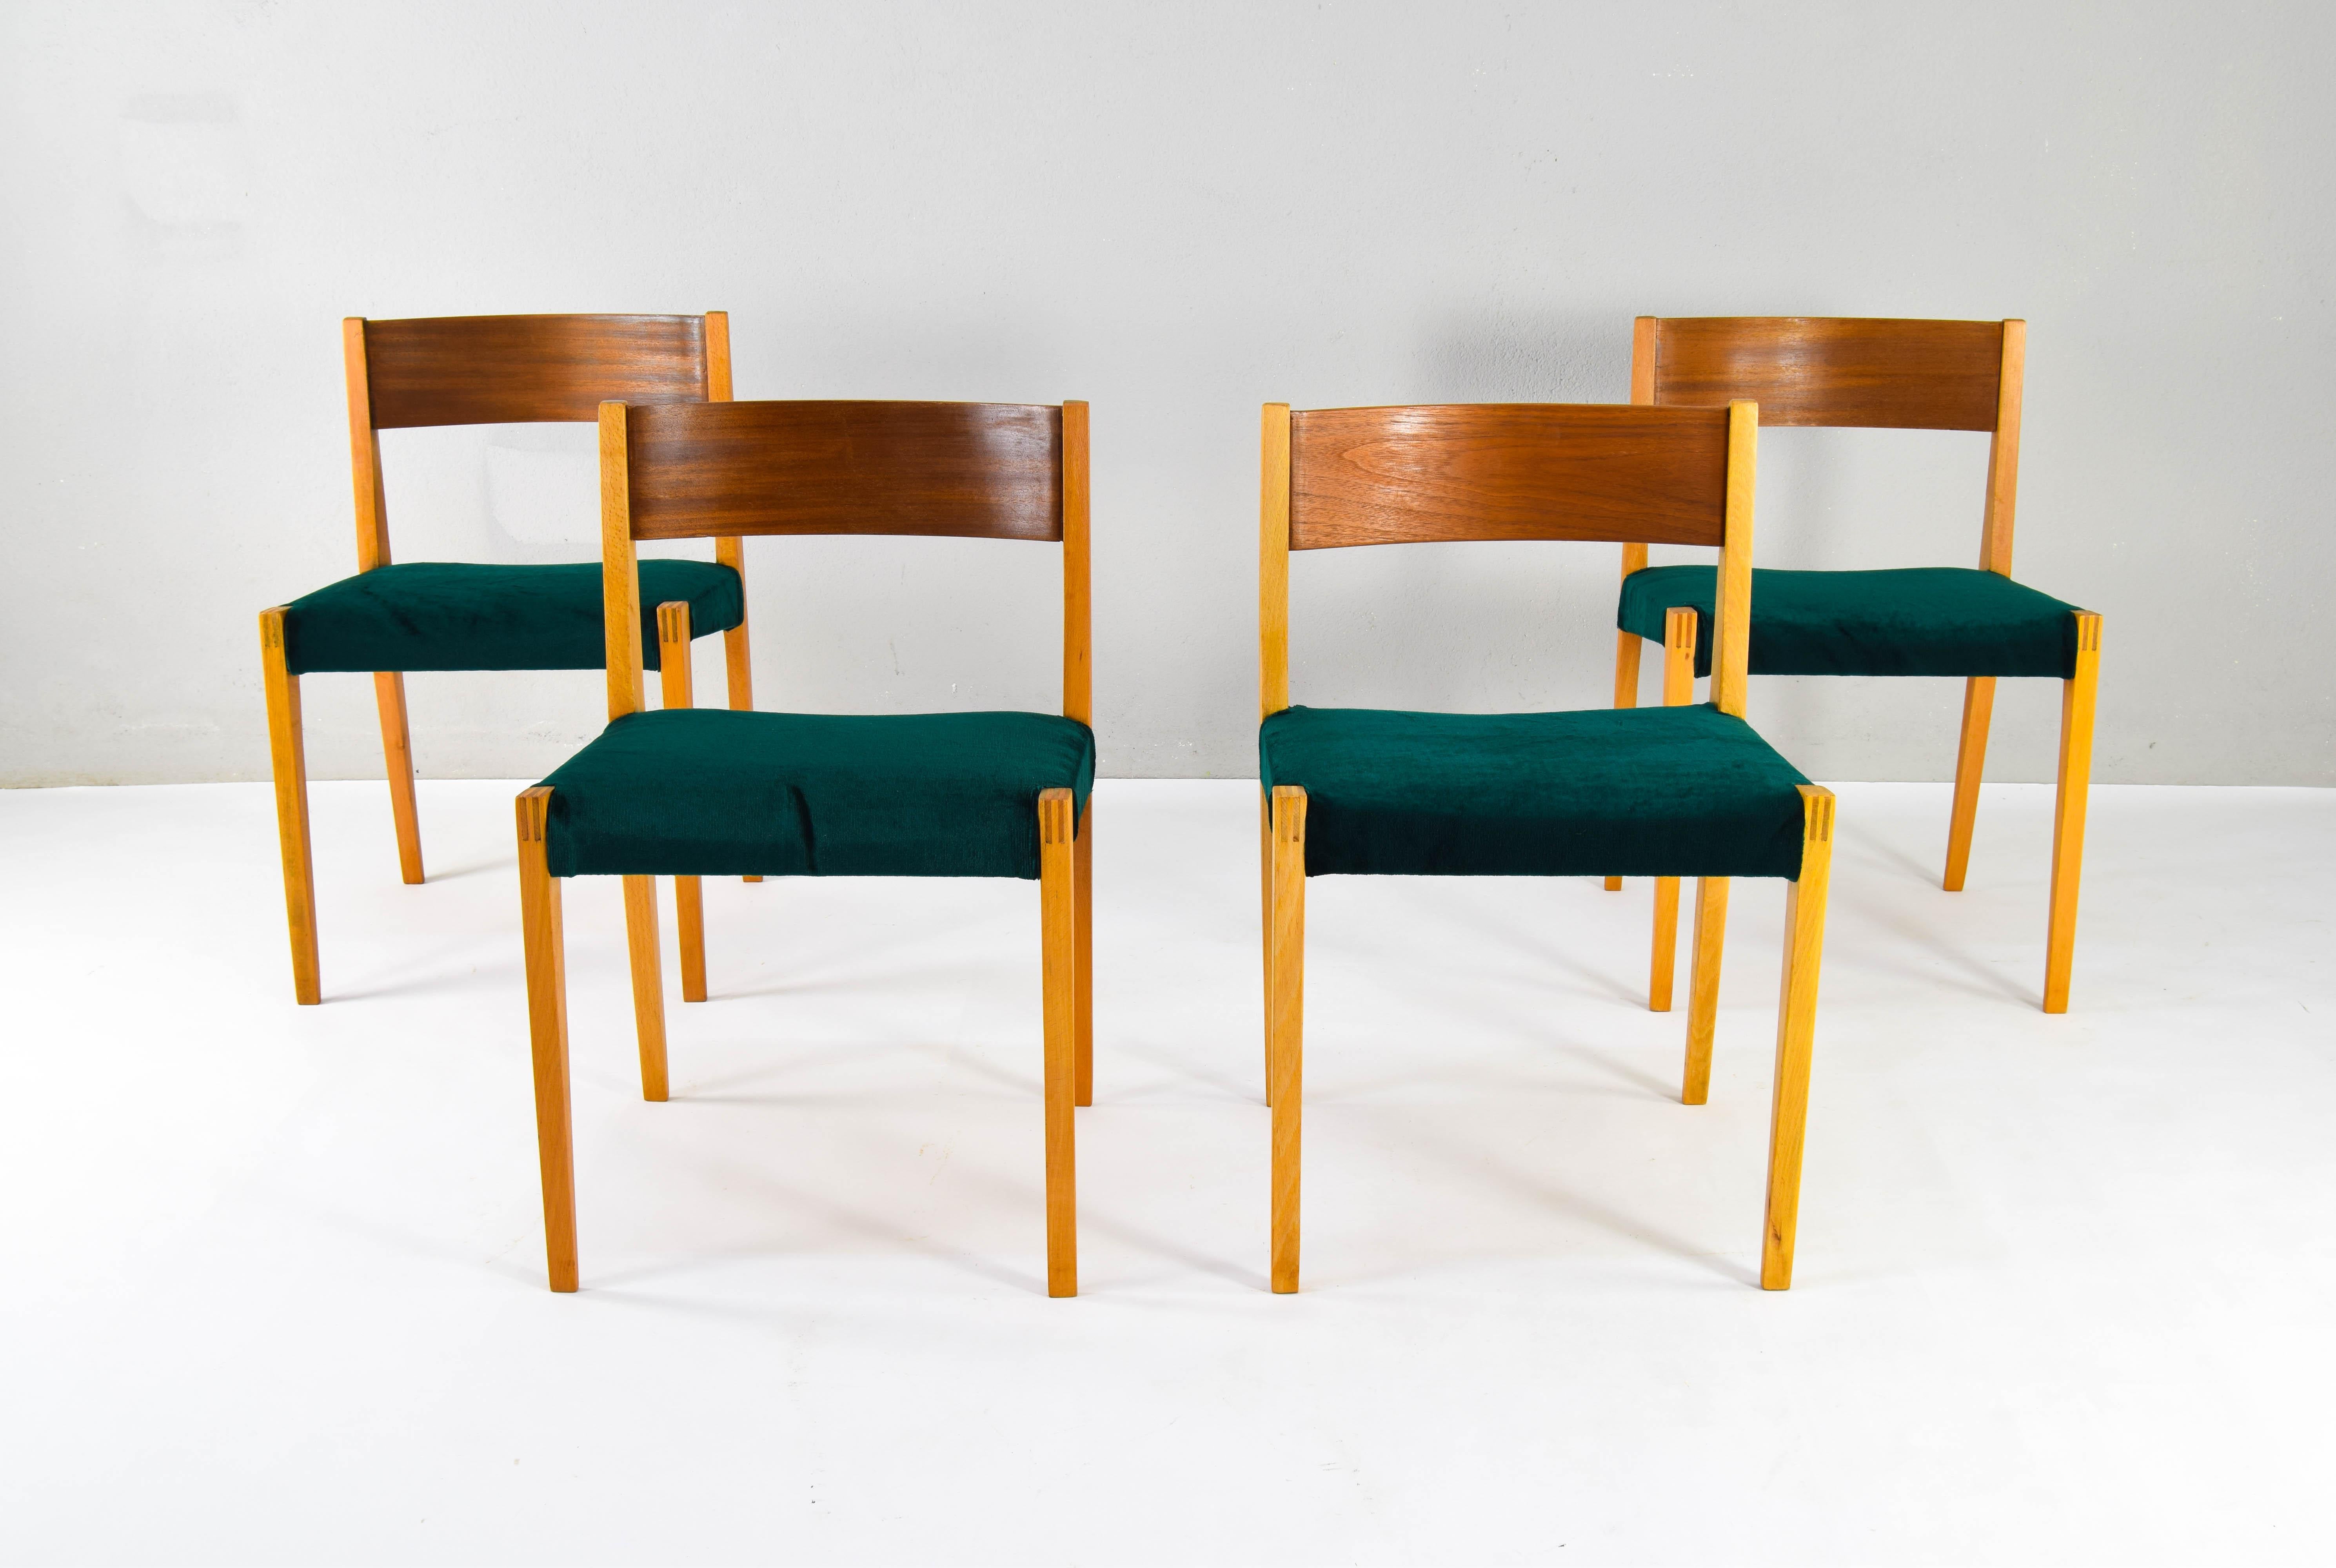 Außergewöhnliche und sehr seltene Pia-Stühle.
Dieses Set aus vier Stühlen hat die Besonderheit, dass die Rückenlehne aus Teakholz und die Beine aus Buche gefertigt sind.
Es könnte sich um einen alten Prototyp handeln.
Gepolstert mit einem schönen